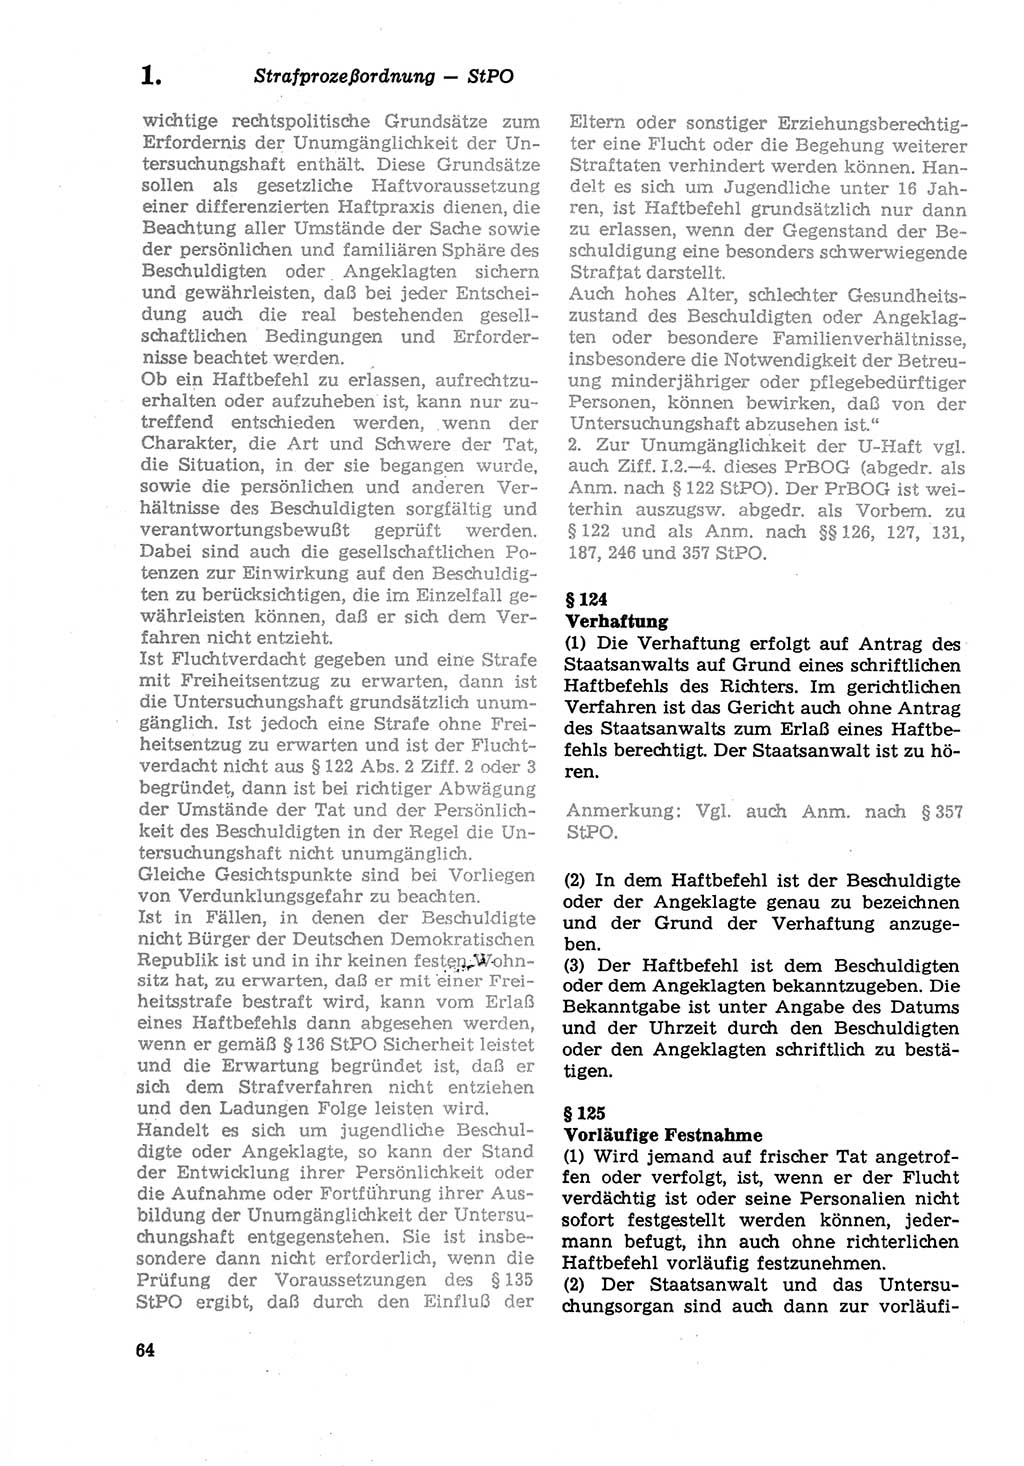 Strafprozeßordnung (StPO) der Deutschen Demokratischen Republik (DDR) sowie angrenzende Gesetze und Bestimmungen 1979, Seite 64 (StPO DDR Ges. Best. 1979, S. 64)